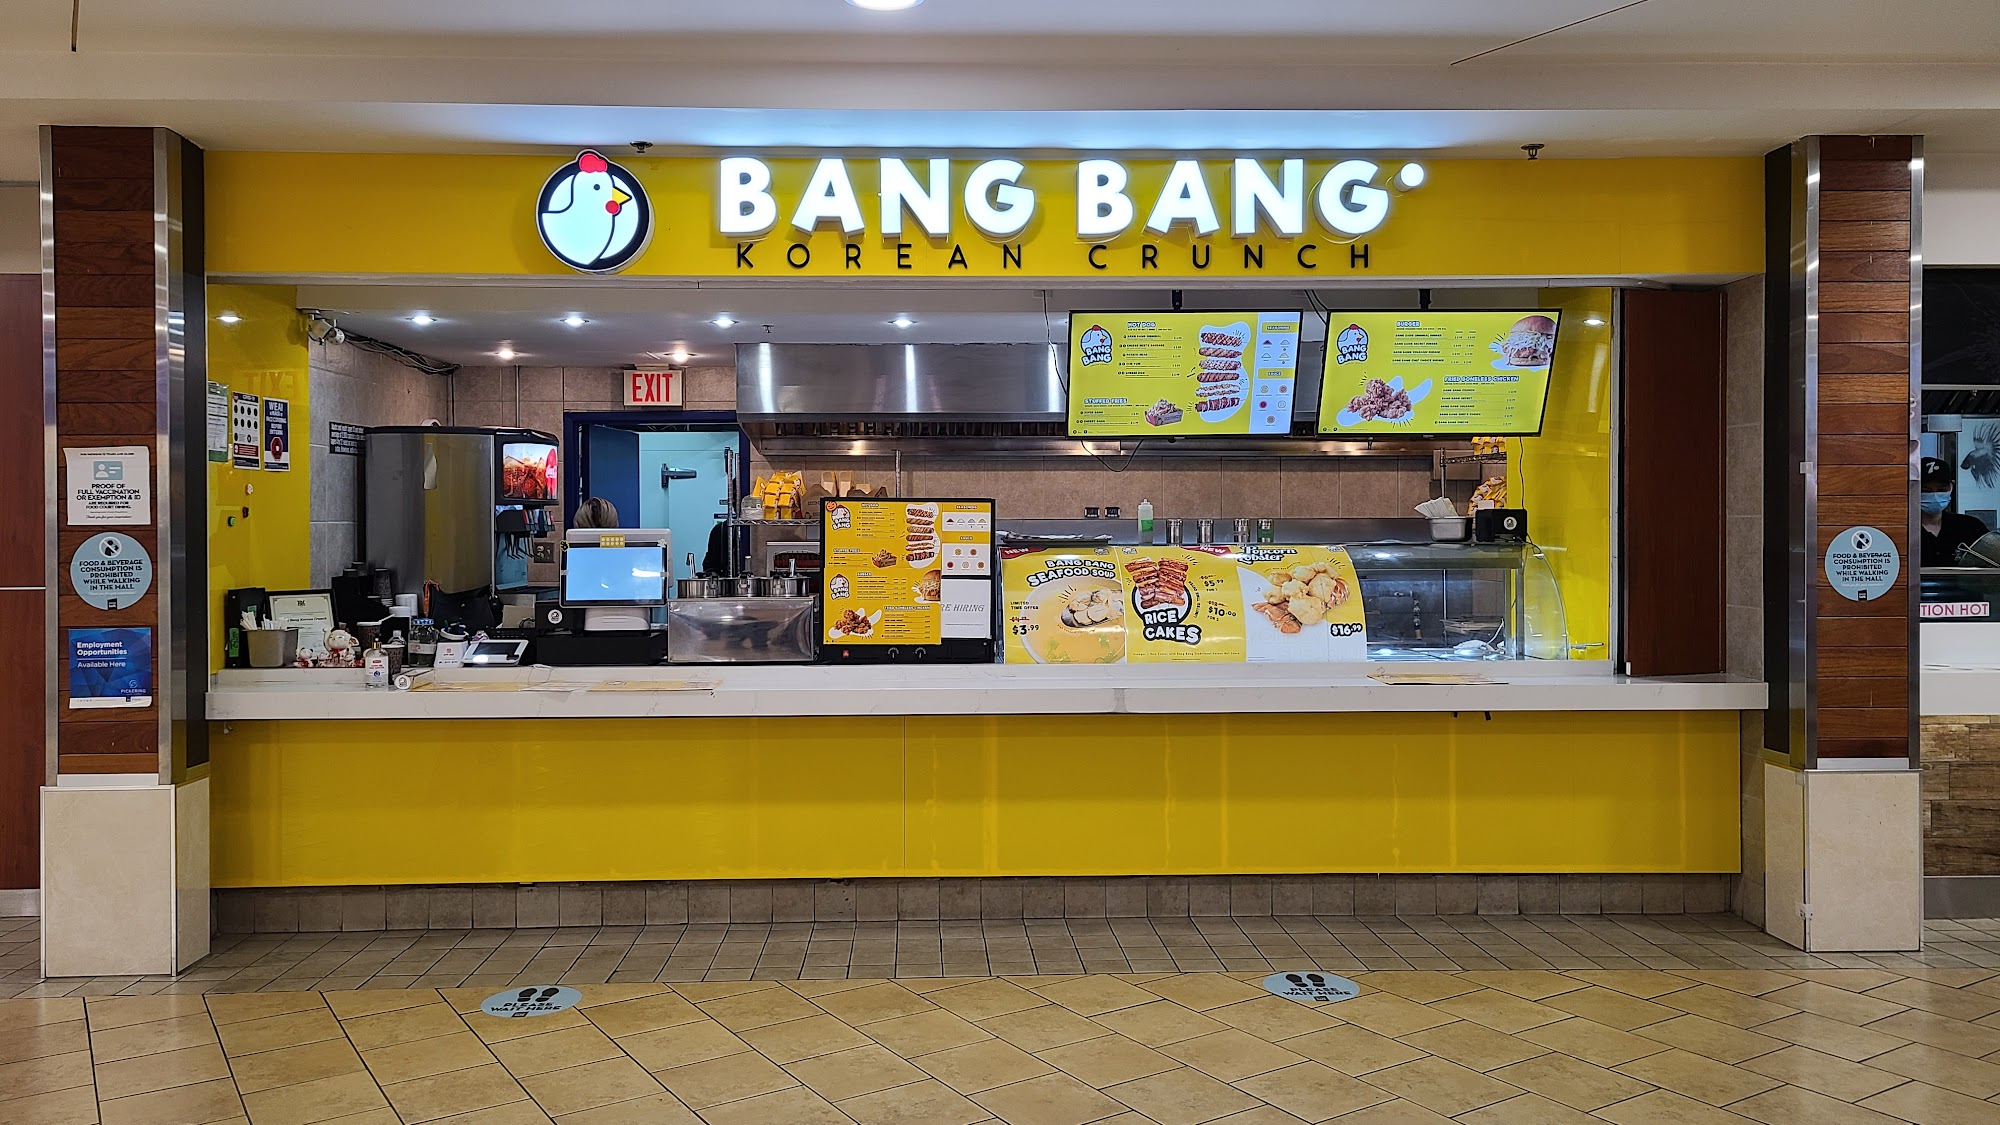 Bang Bang Korean Crunch